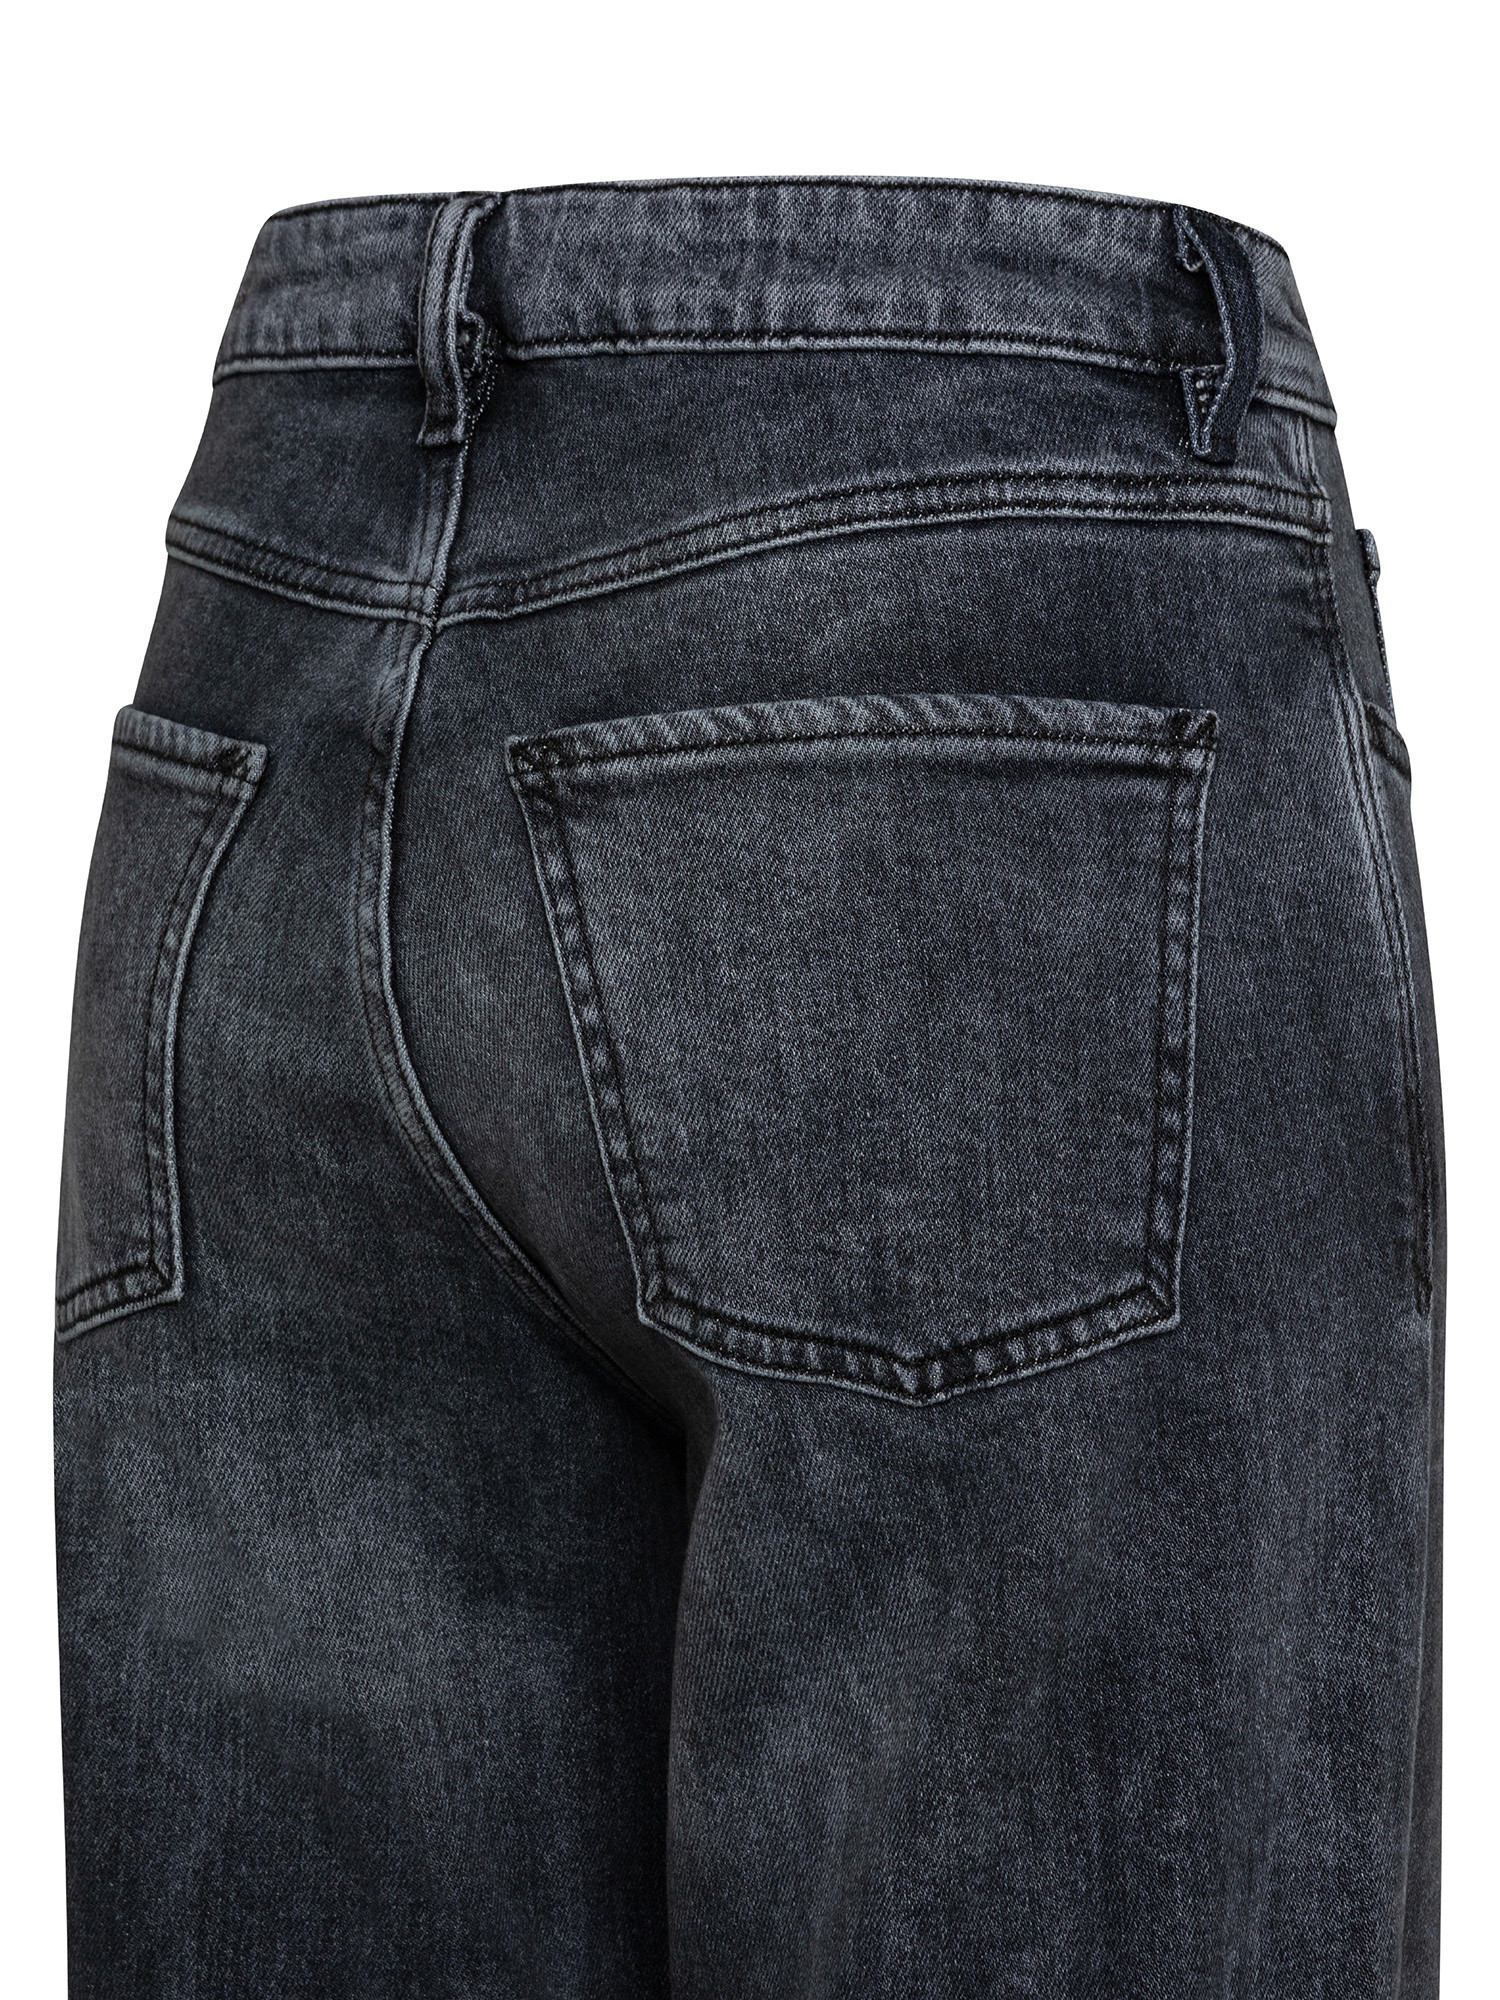 Esprit - Five pocket jeans, Dark Grey, large image number 2